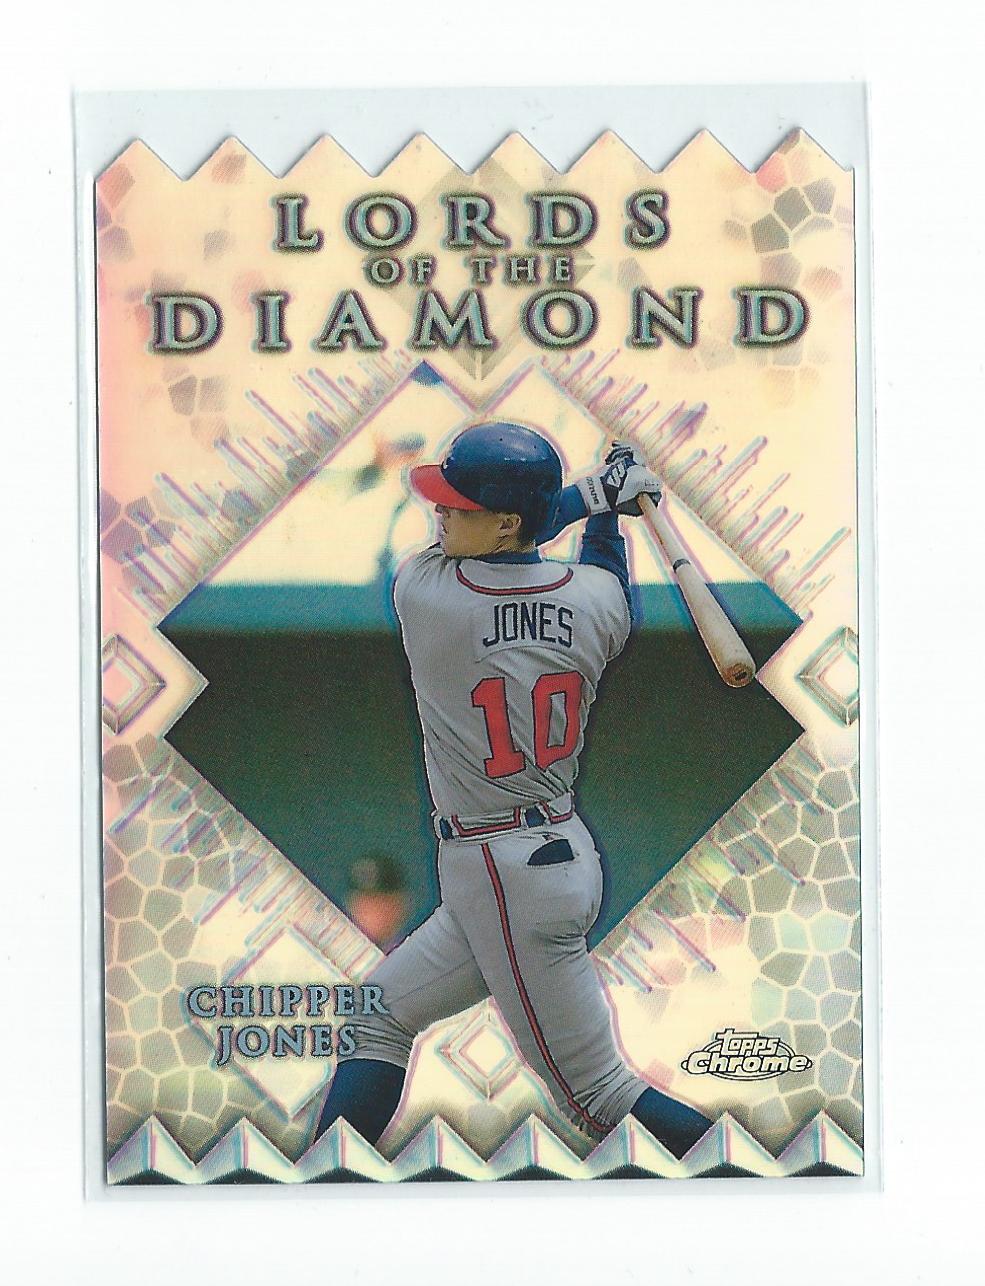 1999 Topps Chrome Lords of the Diamond Refractors #LD2 Chipper Jones